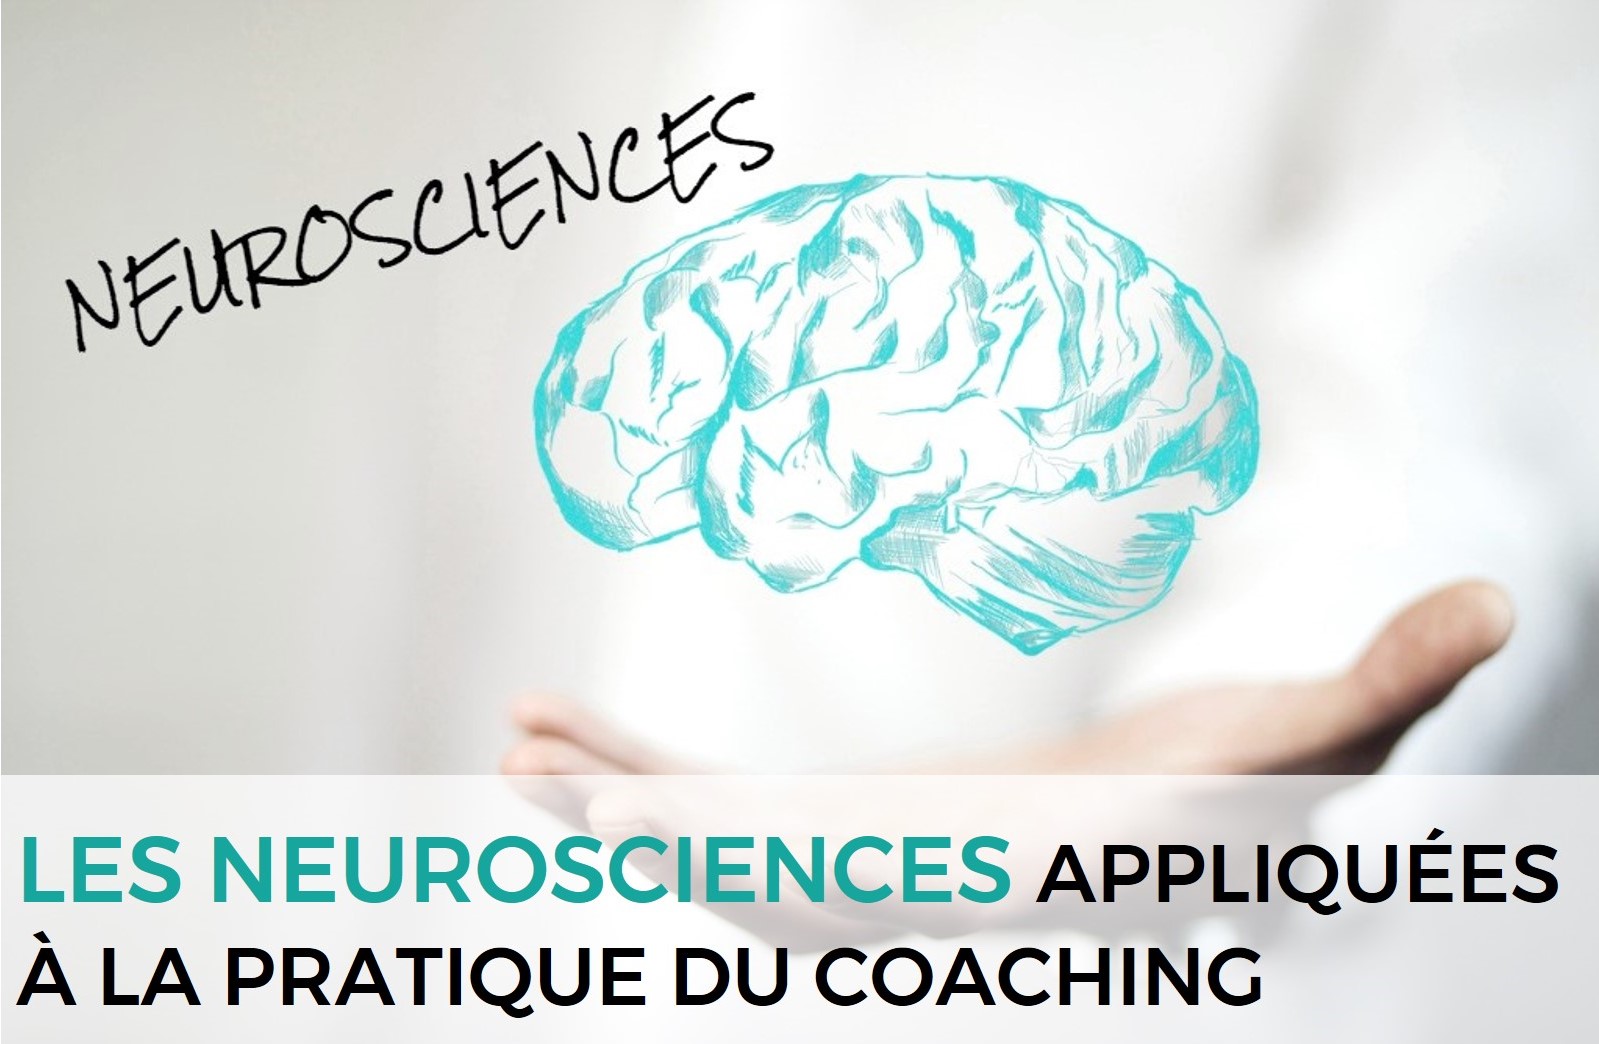 Les neurosciences appliquées et la pratique du coaching